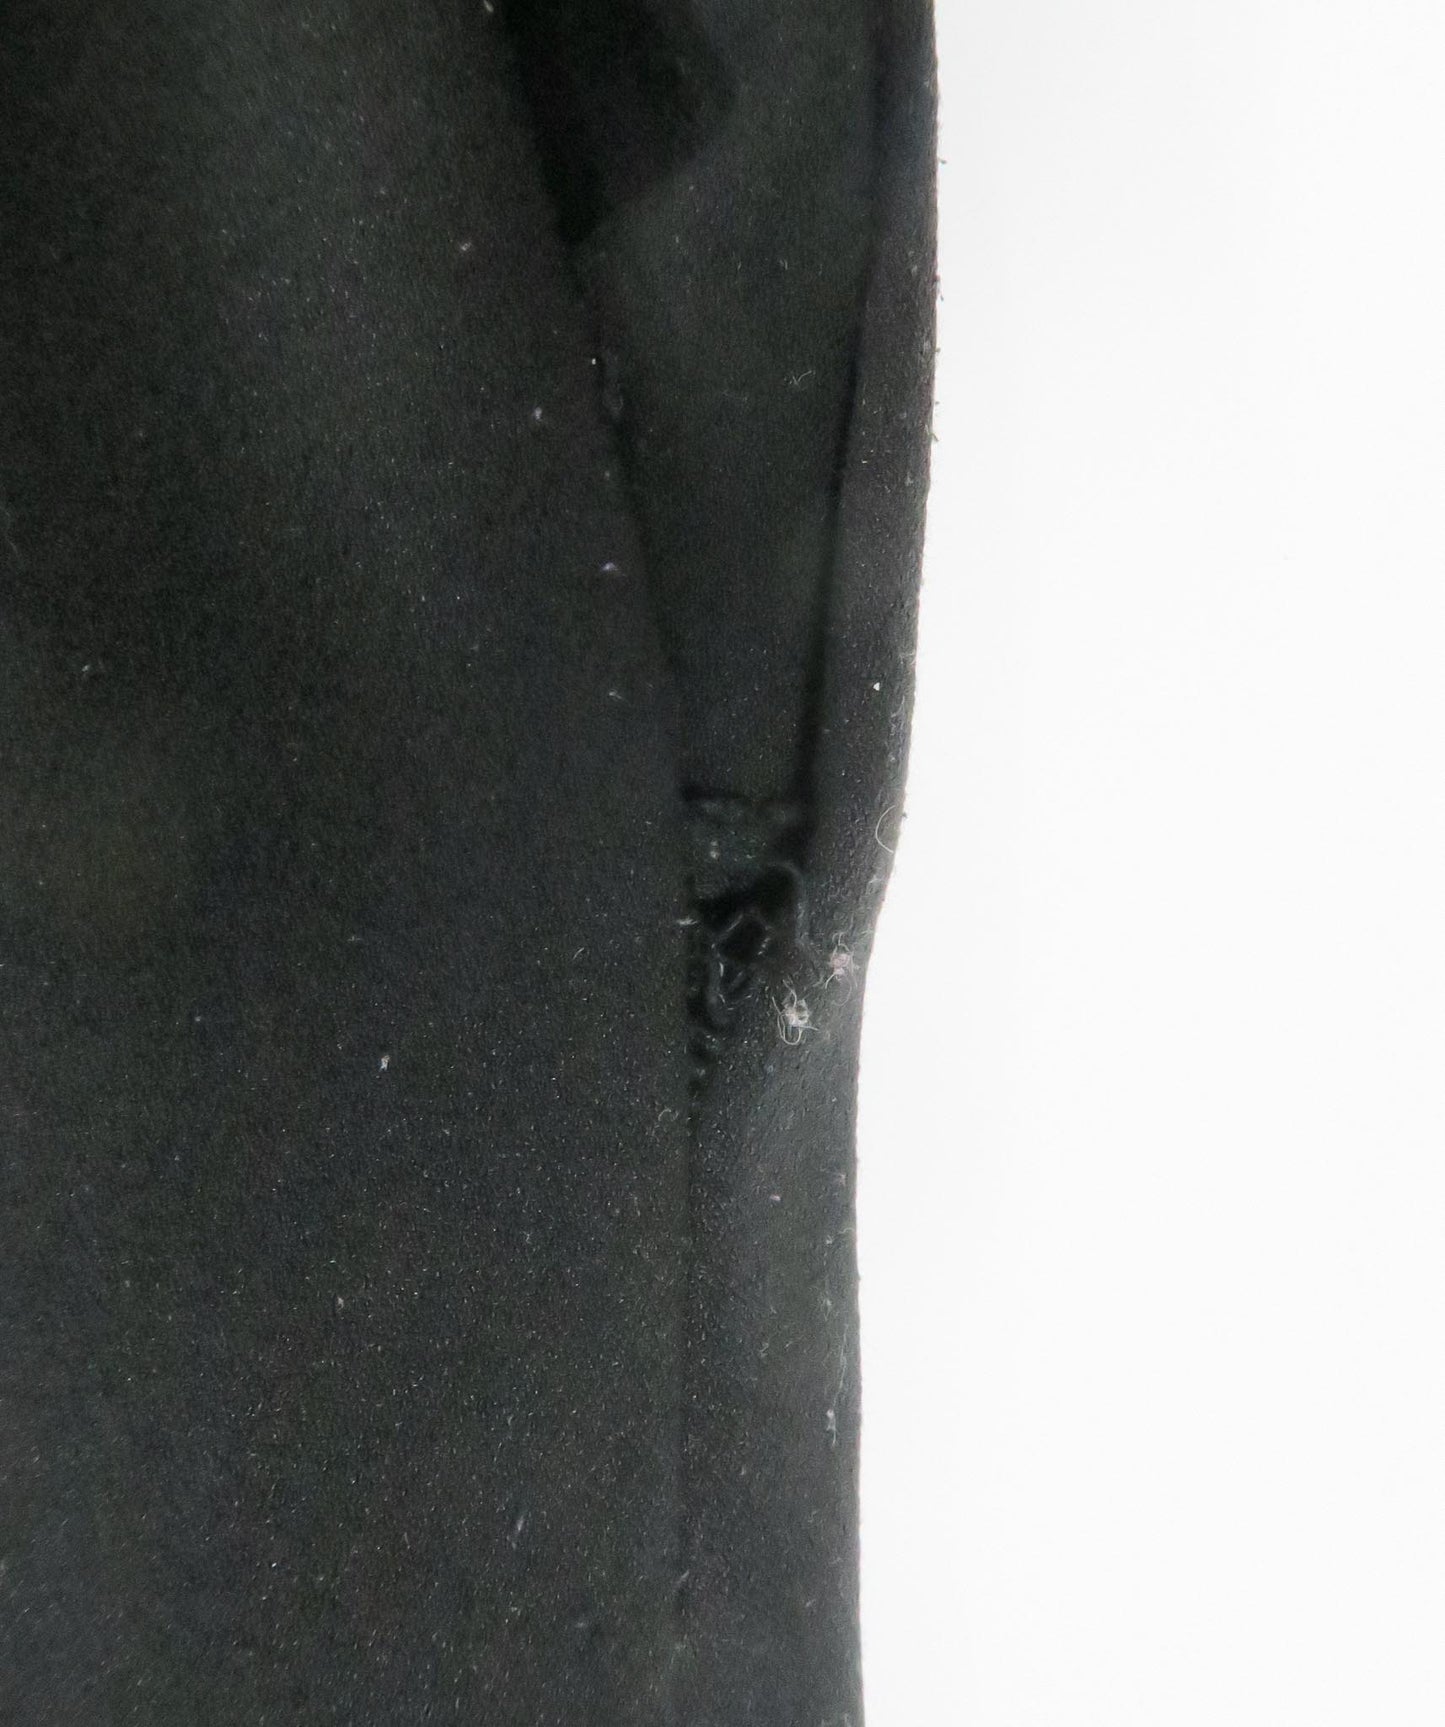 MSGM Black Ruffle Detail Mini Dress UK 10